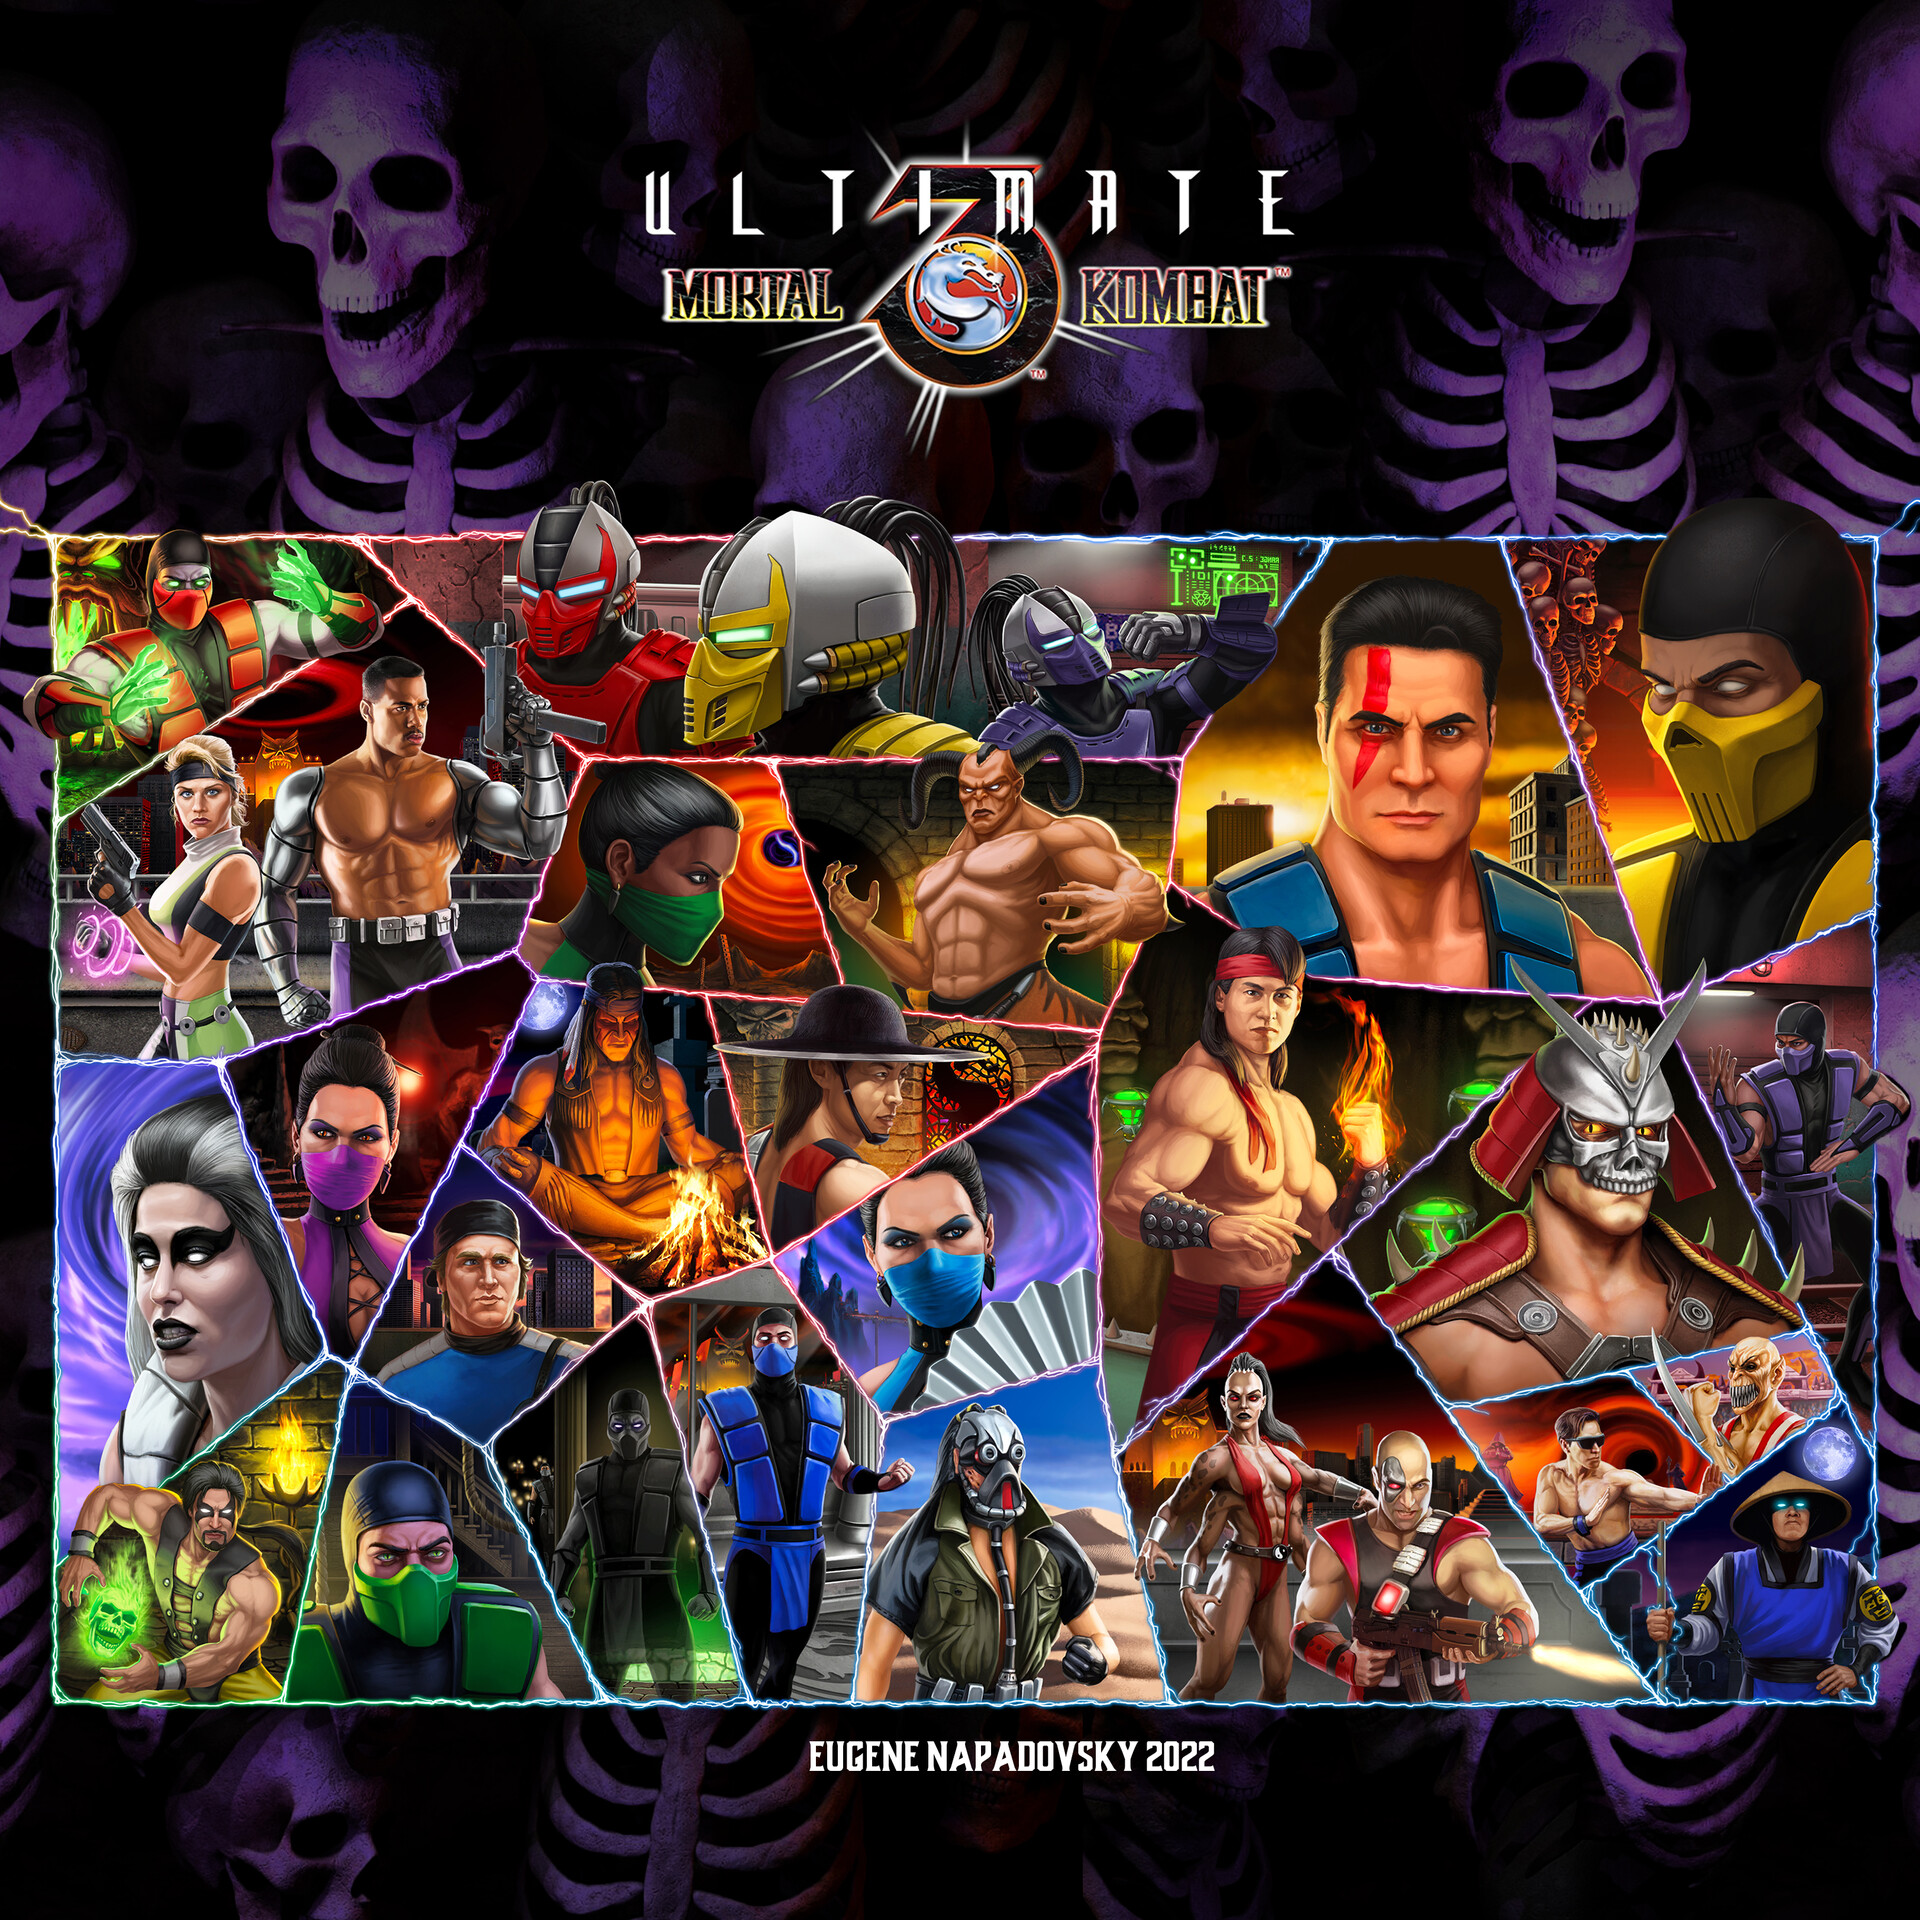 ArtStation - Kano fanart Mortal Kombat